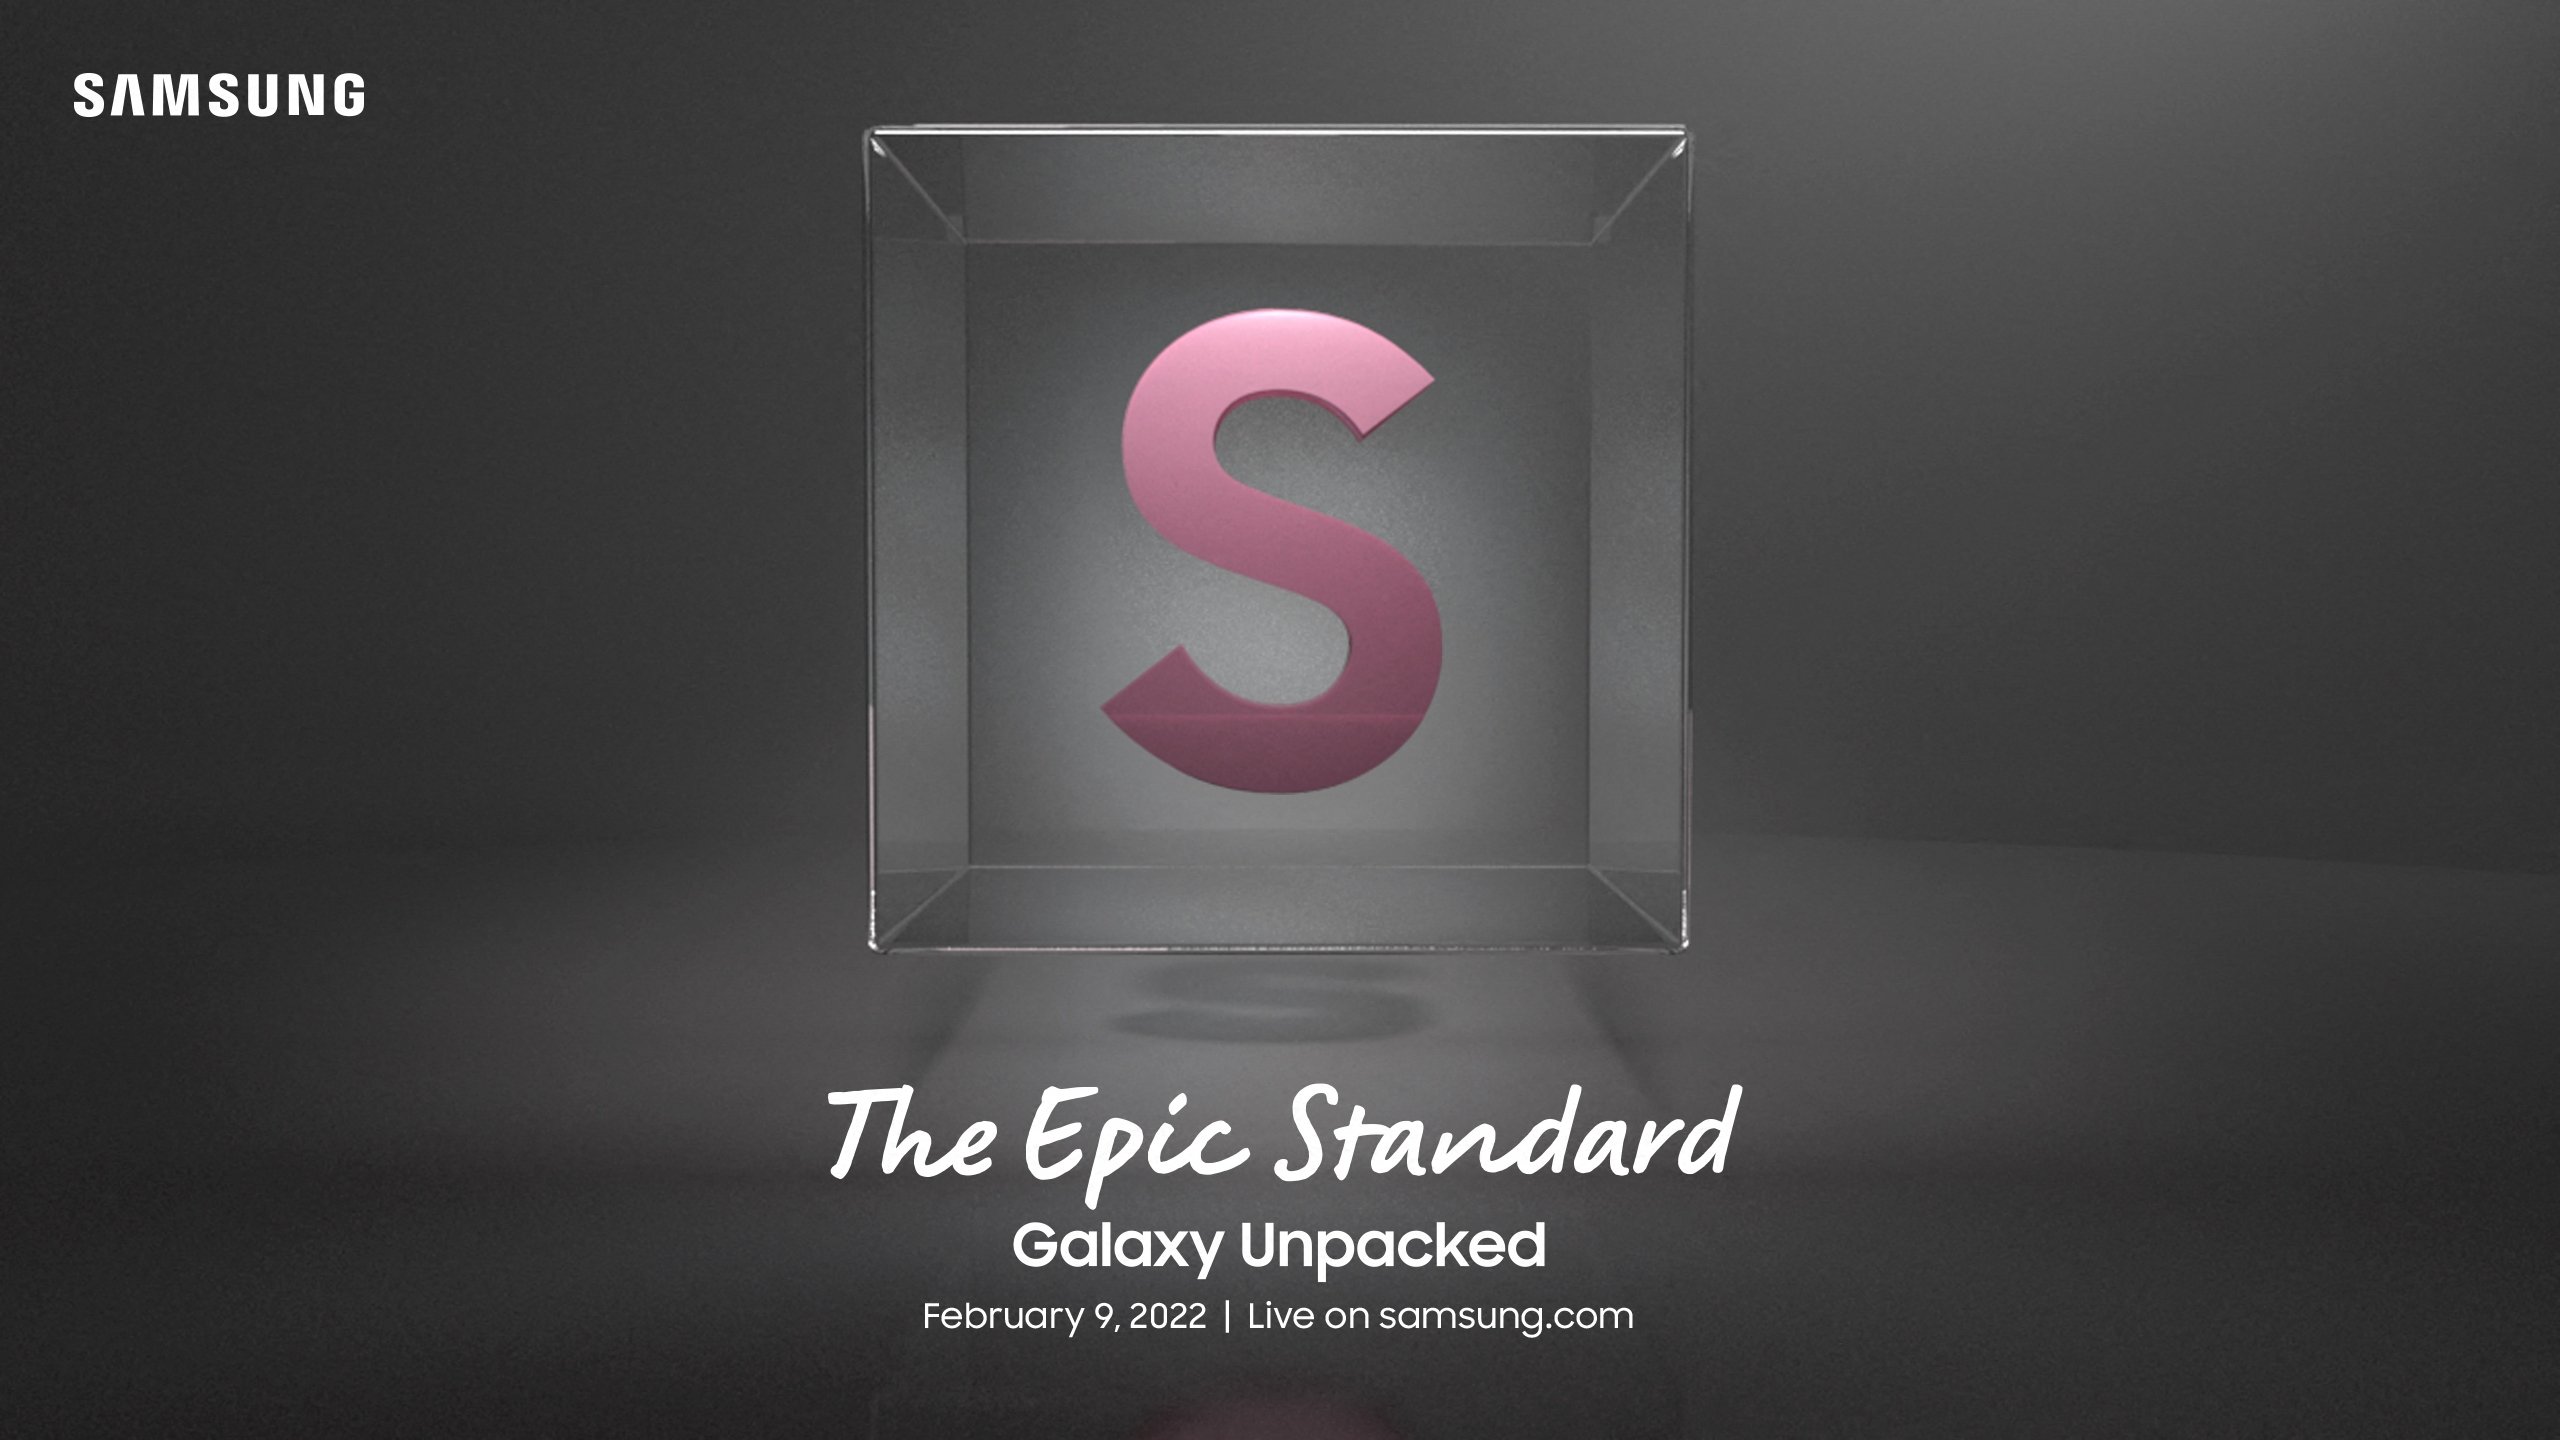 Teraz oficjalnie: prezentacja Galaxy Unpacked, która zaprezentuje smartfony Galaxy S22, odbędzie się 9 lutego